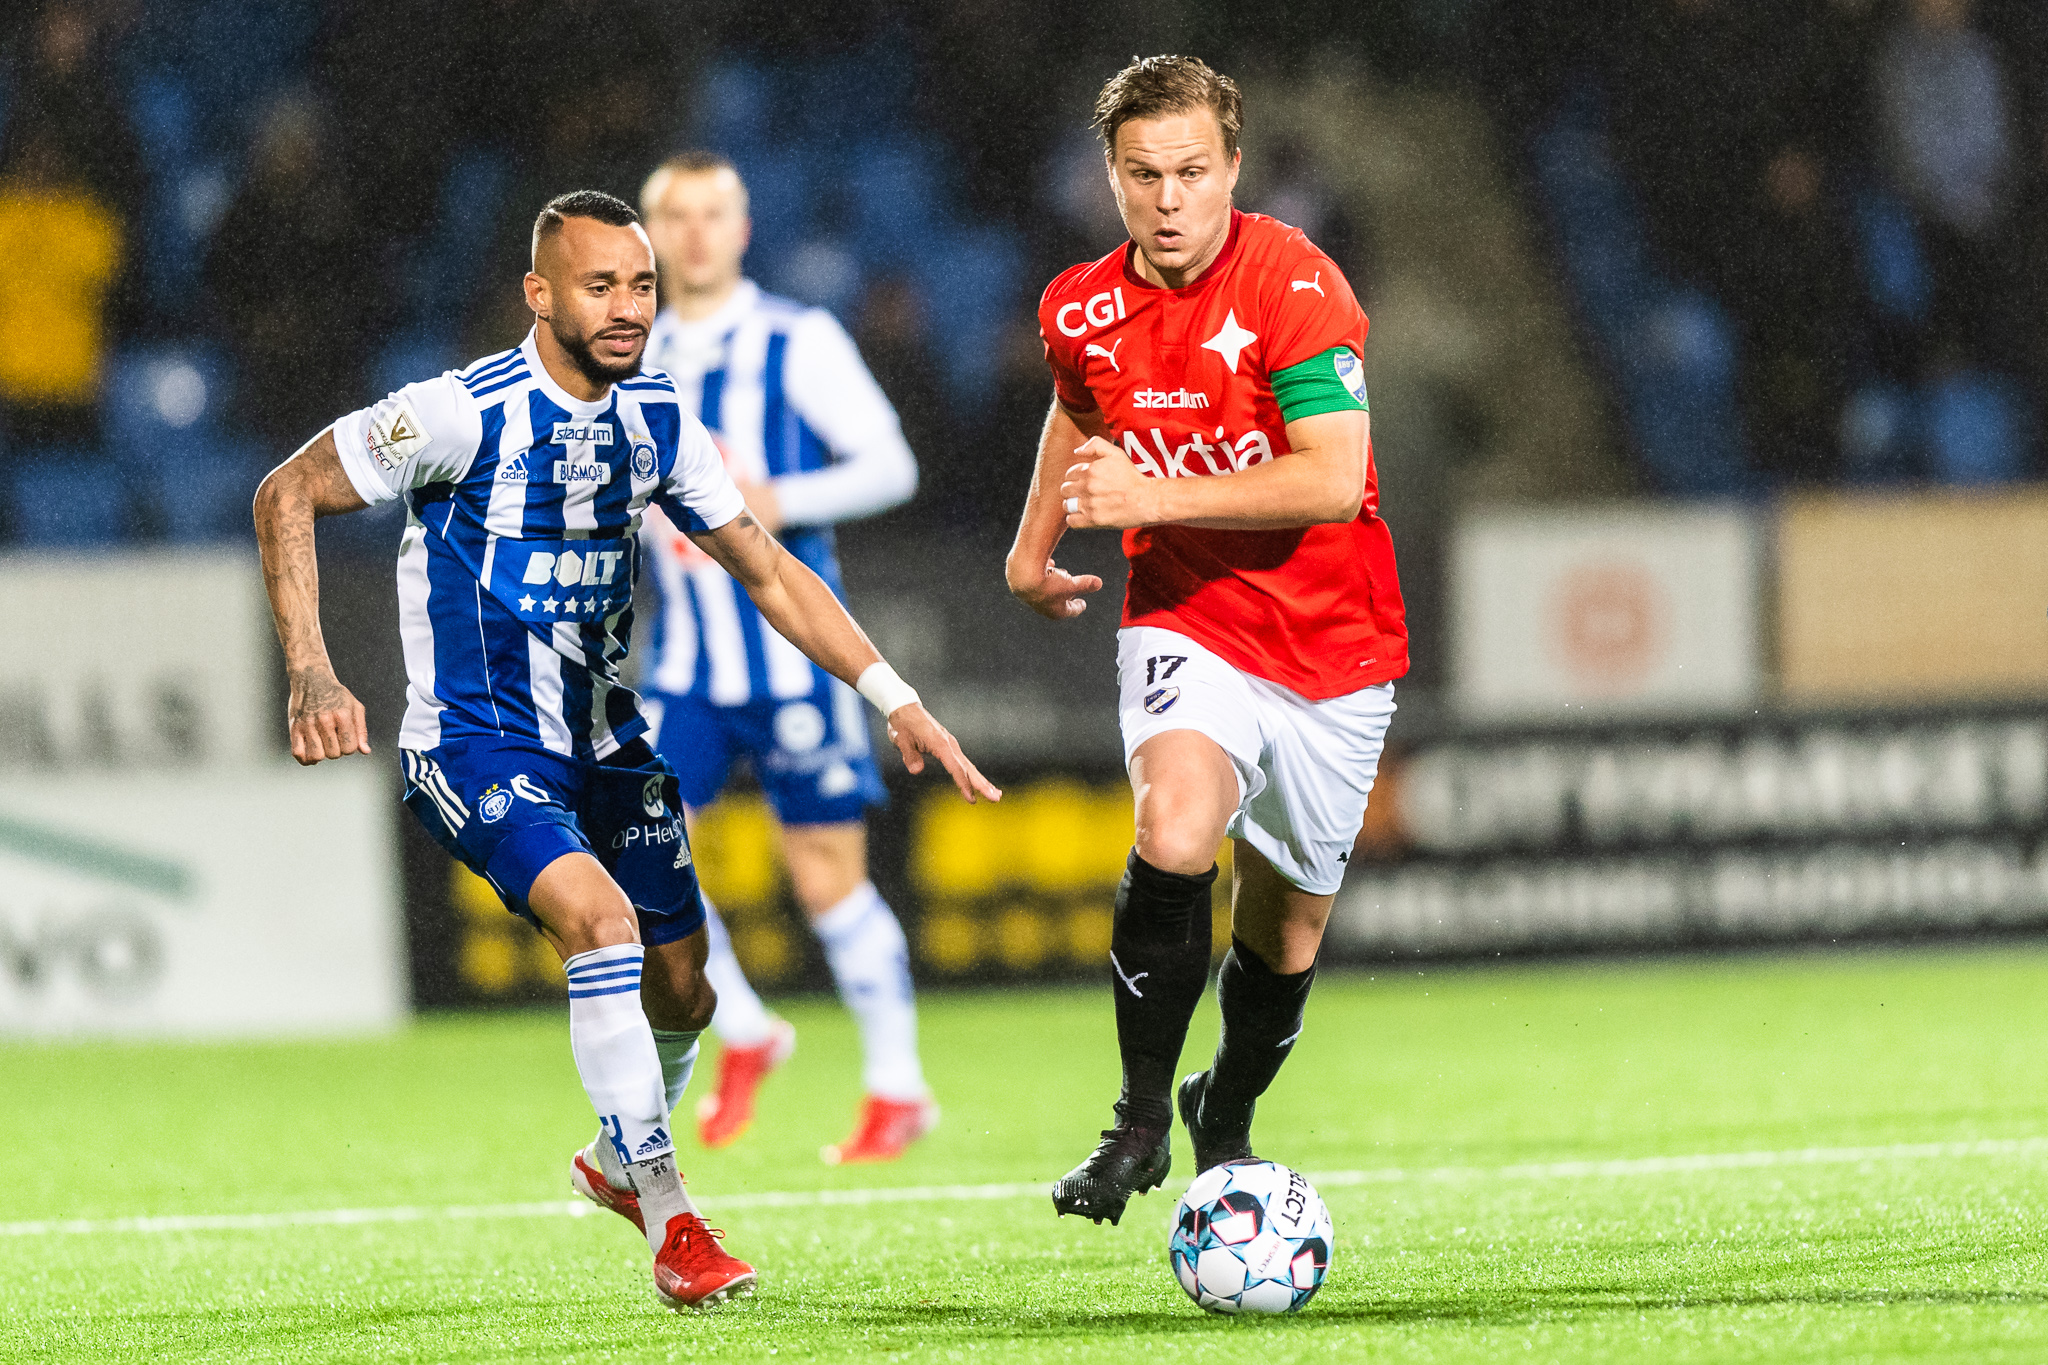 HIFK fortsättningsvis utan seger i mästerskapsserien – HJK vann säsongens sista derby